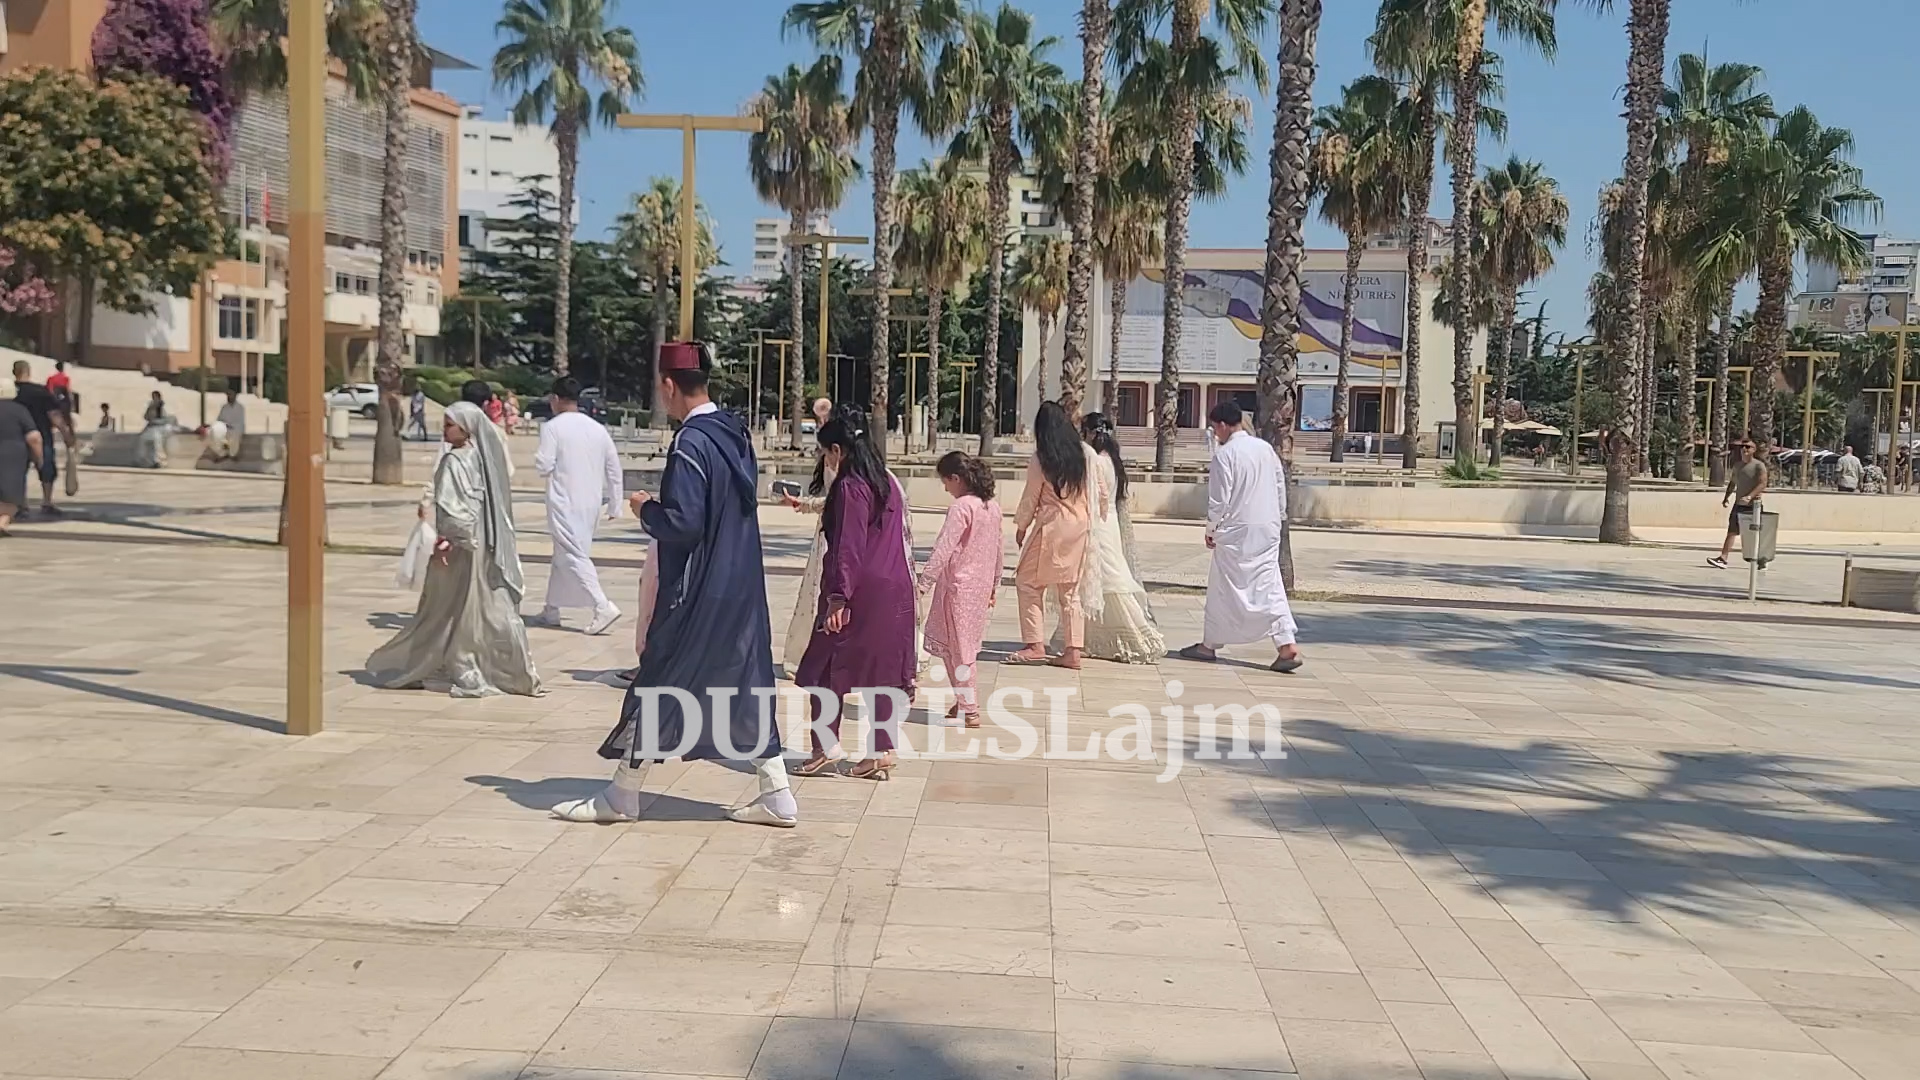 Durrësi, si destinacion për celebrimin e dasmave nga të huajt! Cilët ishin dasmorët që ngjallën kureshtje në qytet? (VIDEO)